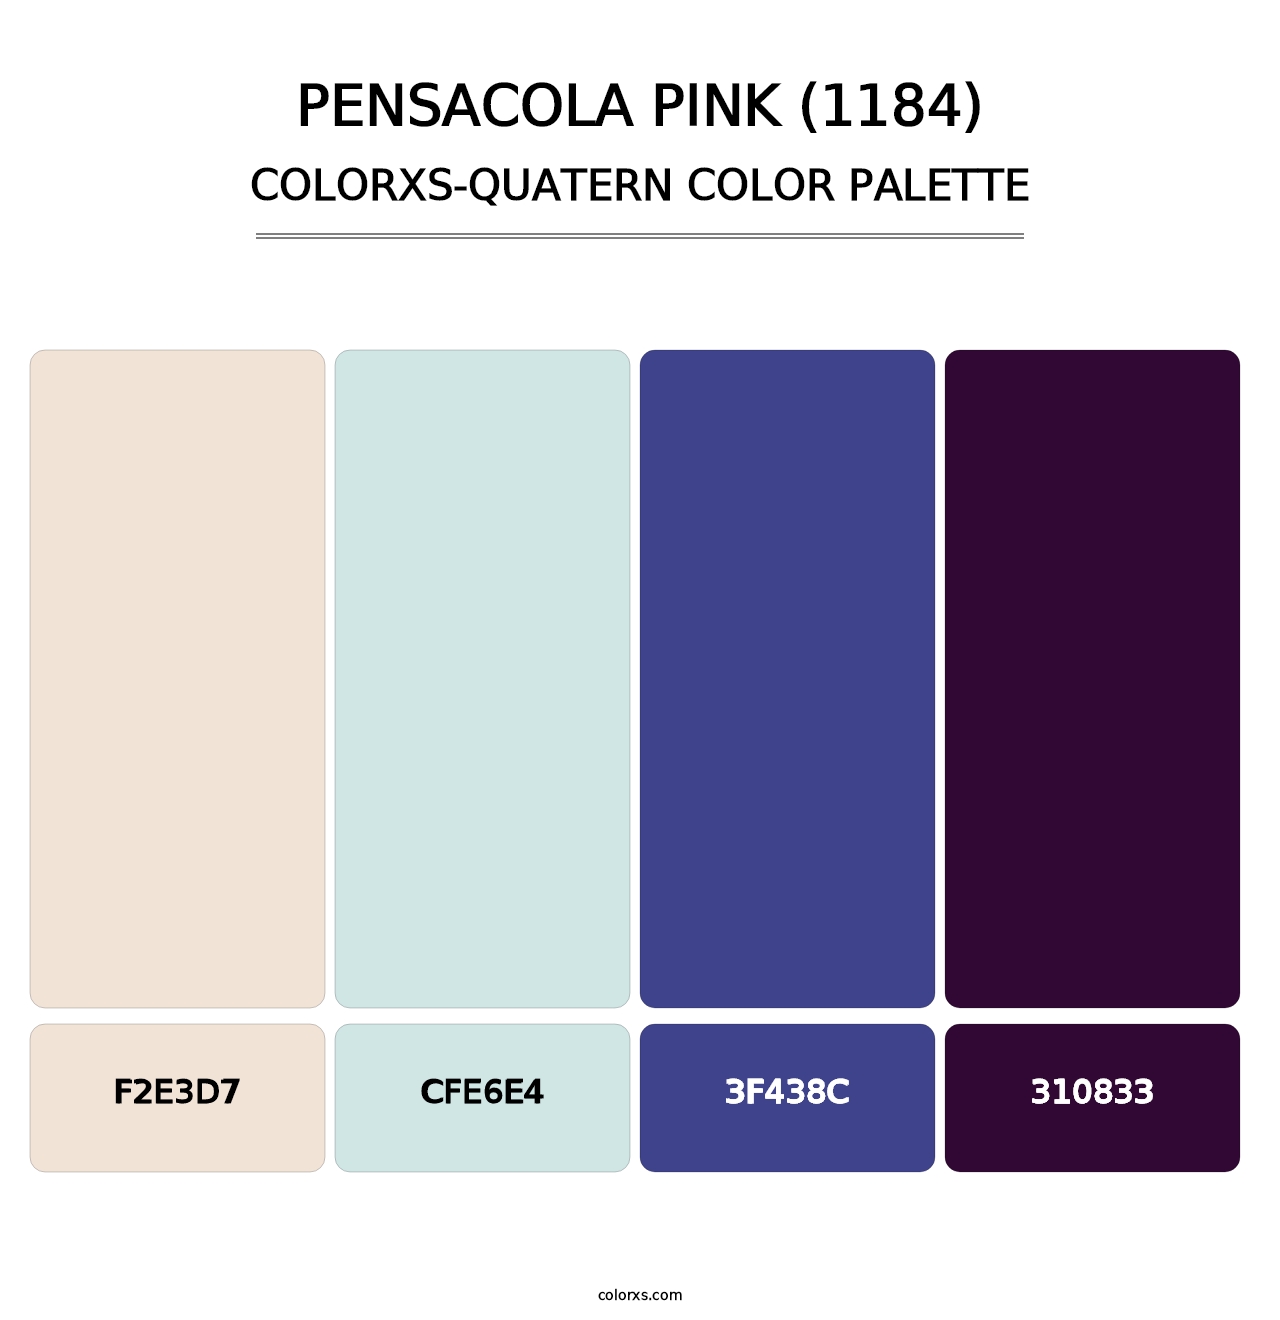 Pensacola Pink (1184) - Colorxs Quatern Palette